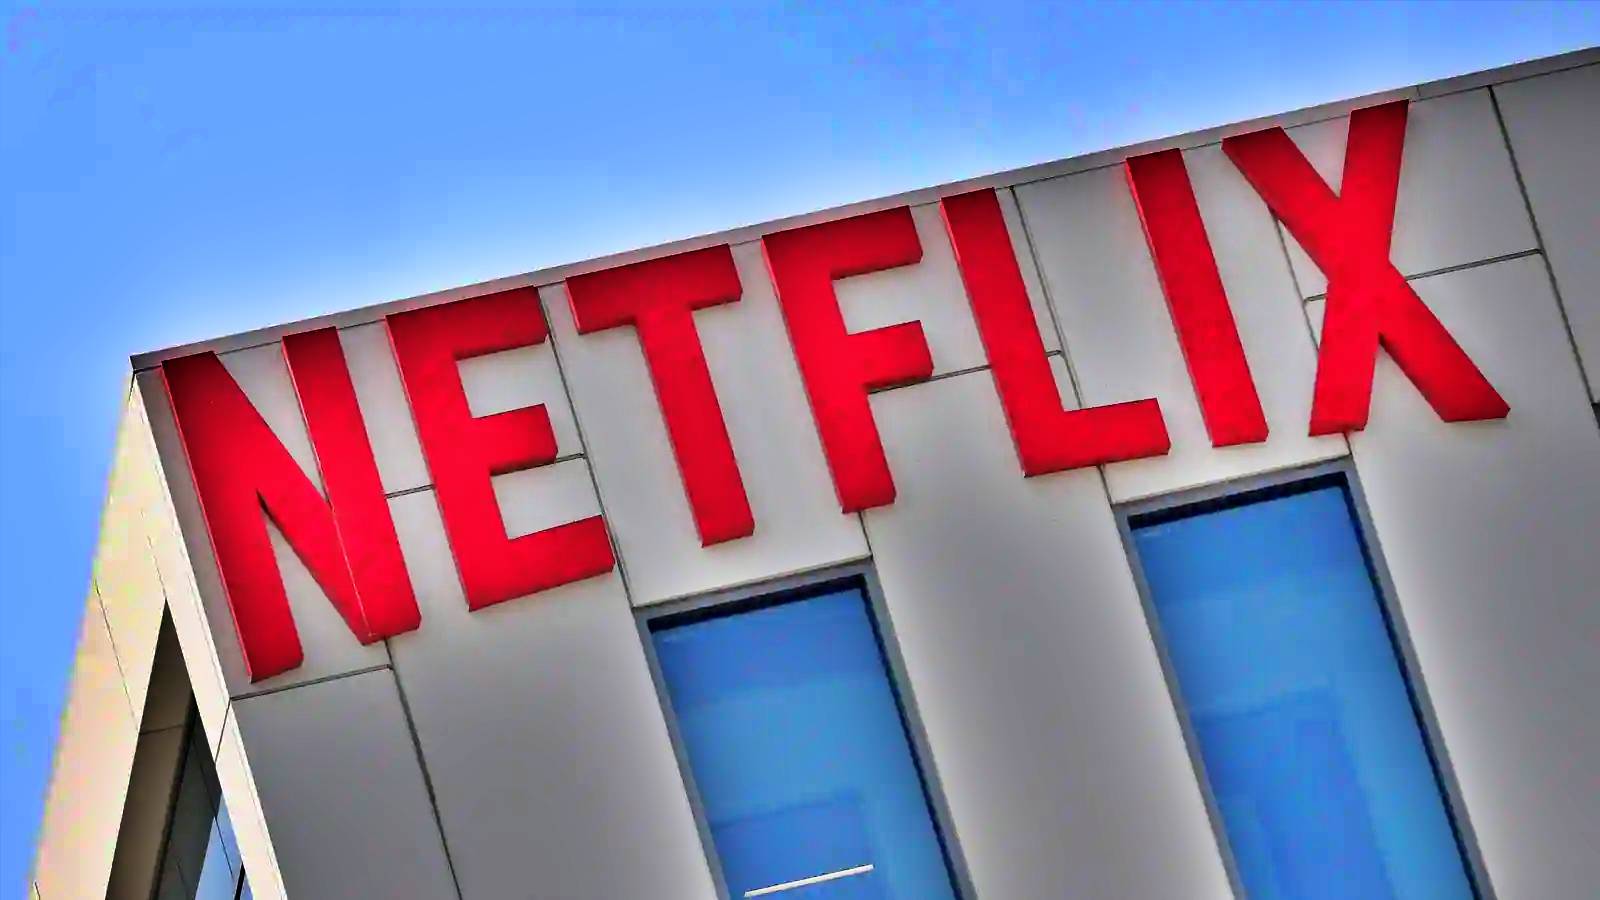 Netflix Noi Filme Seriale POPULARE Anuntate Oficial Lansare